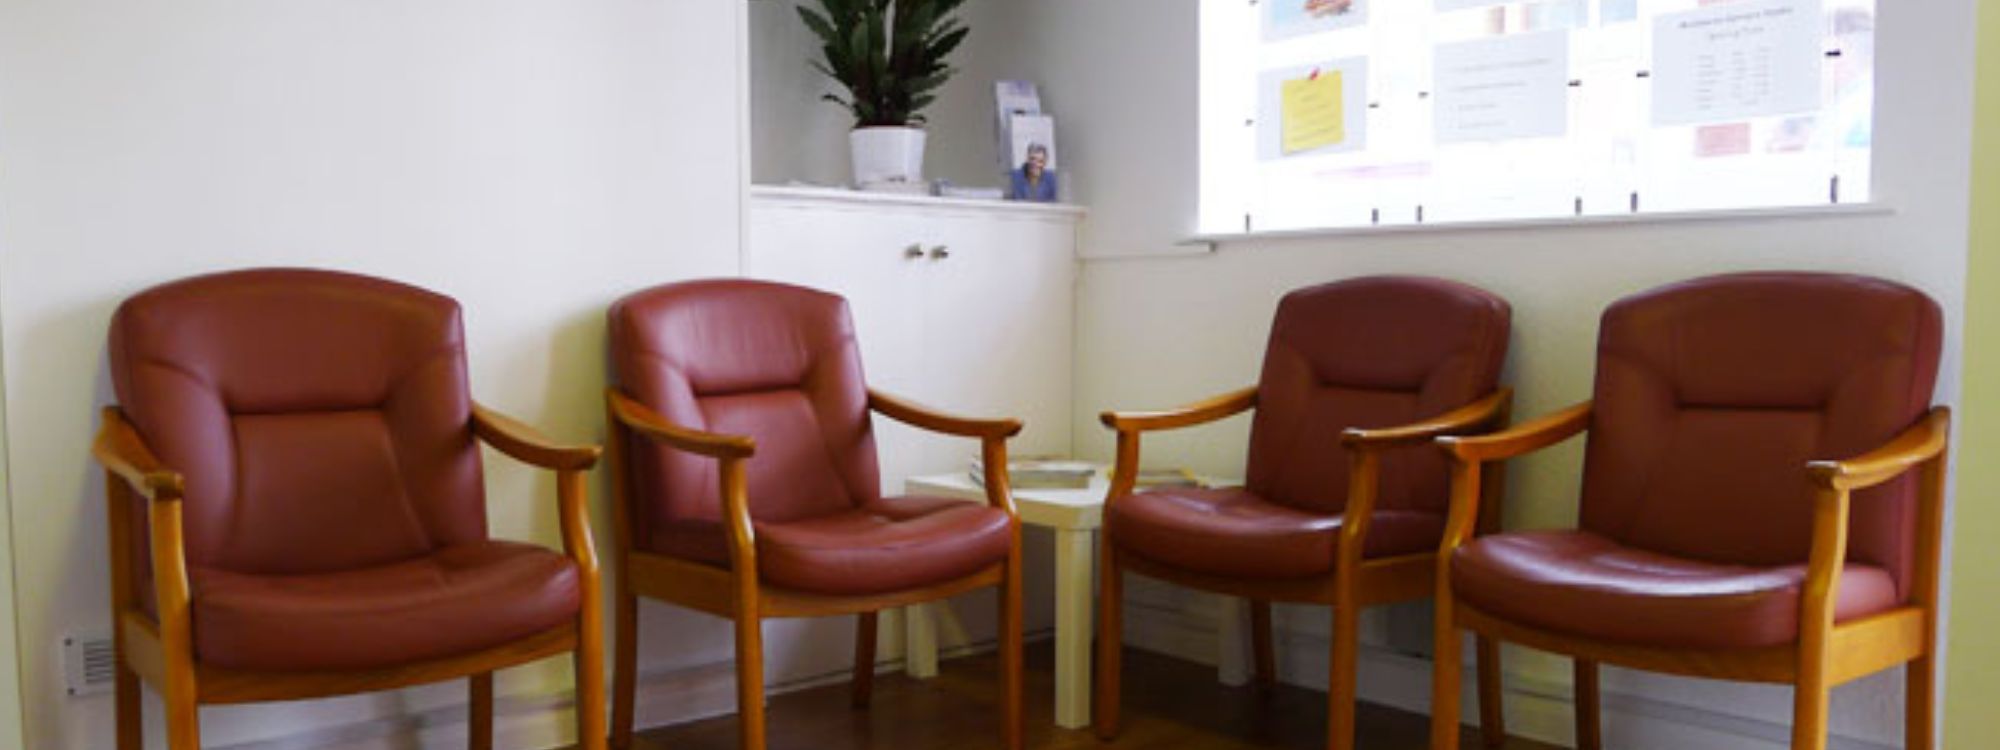 Reception Area at Maidstone Denture Studio - 